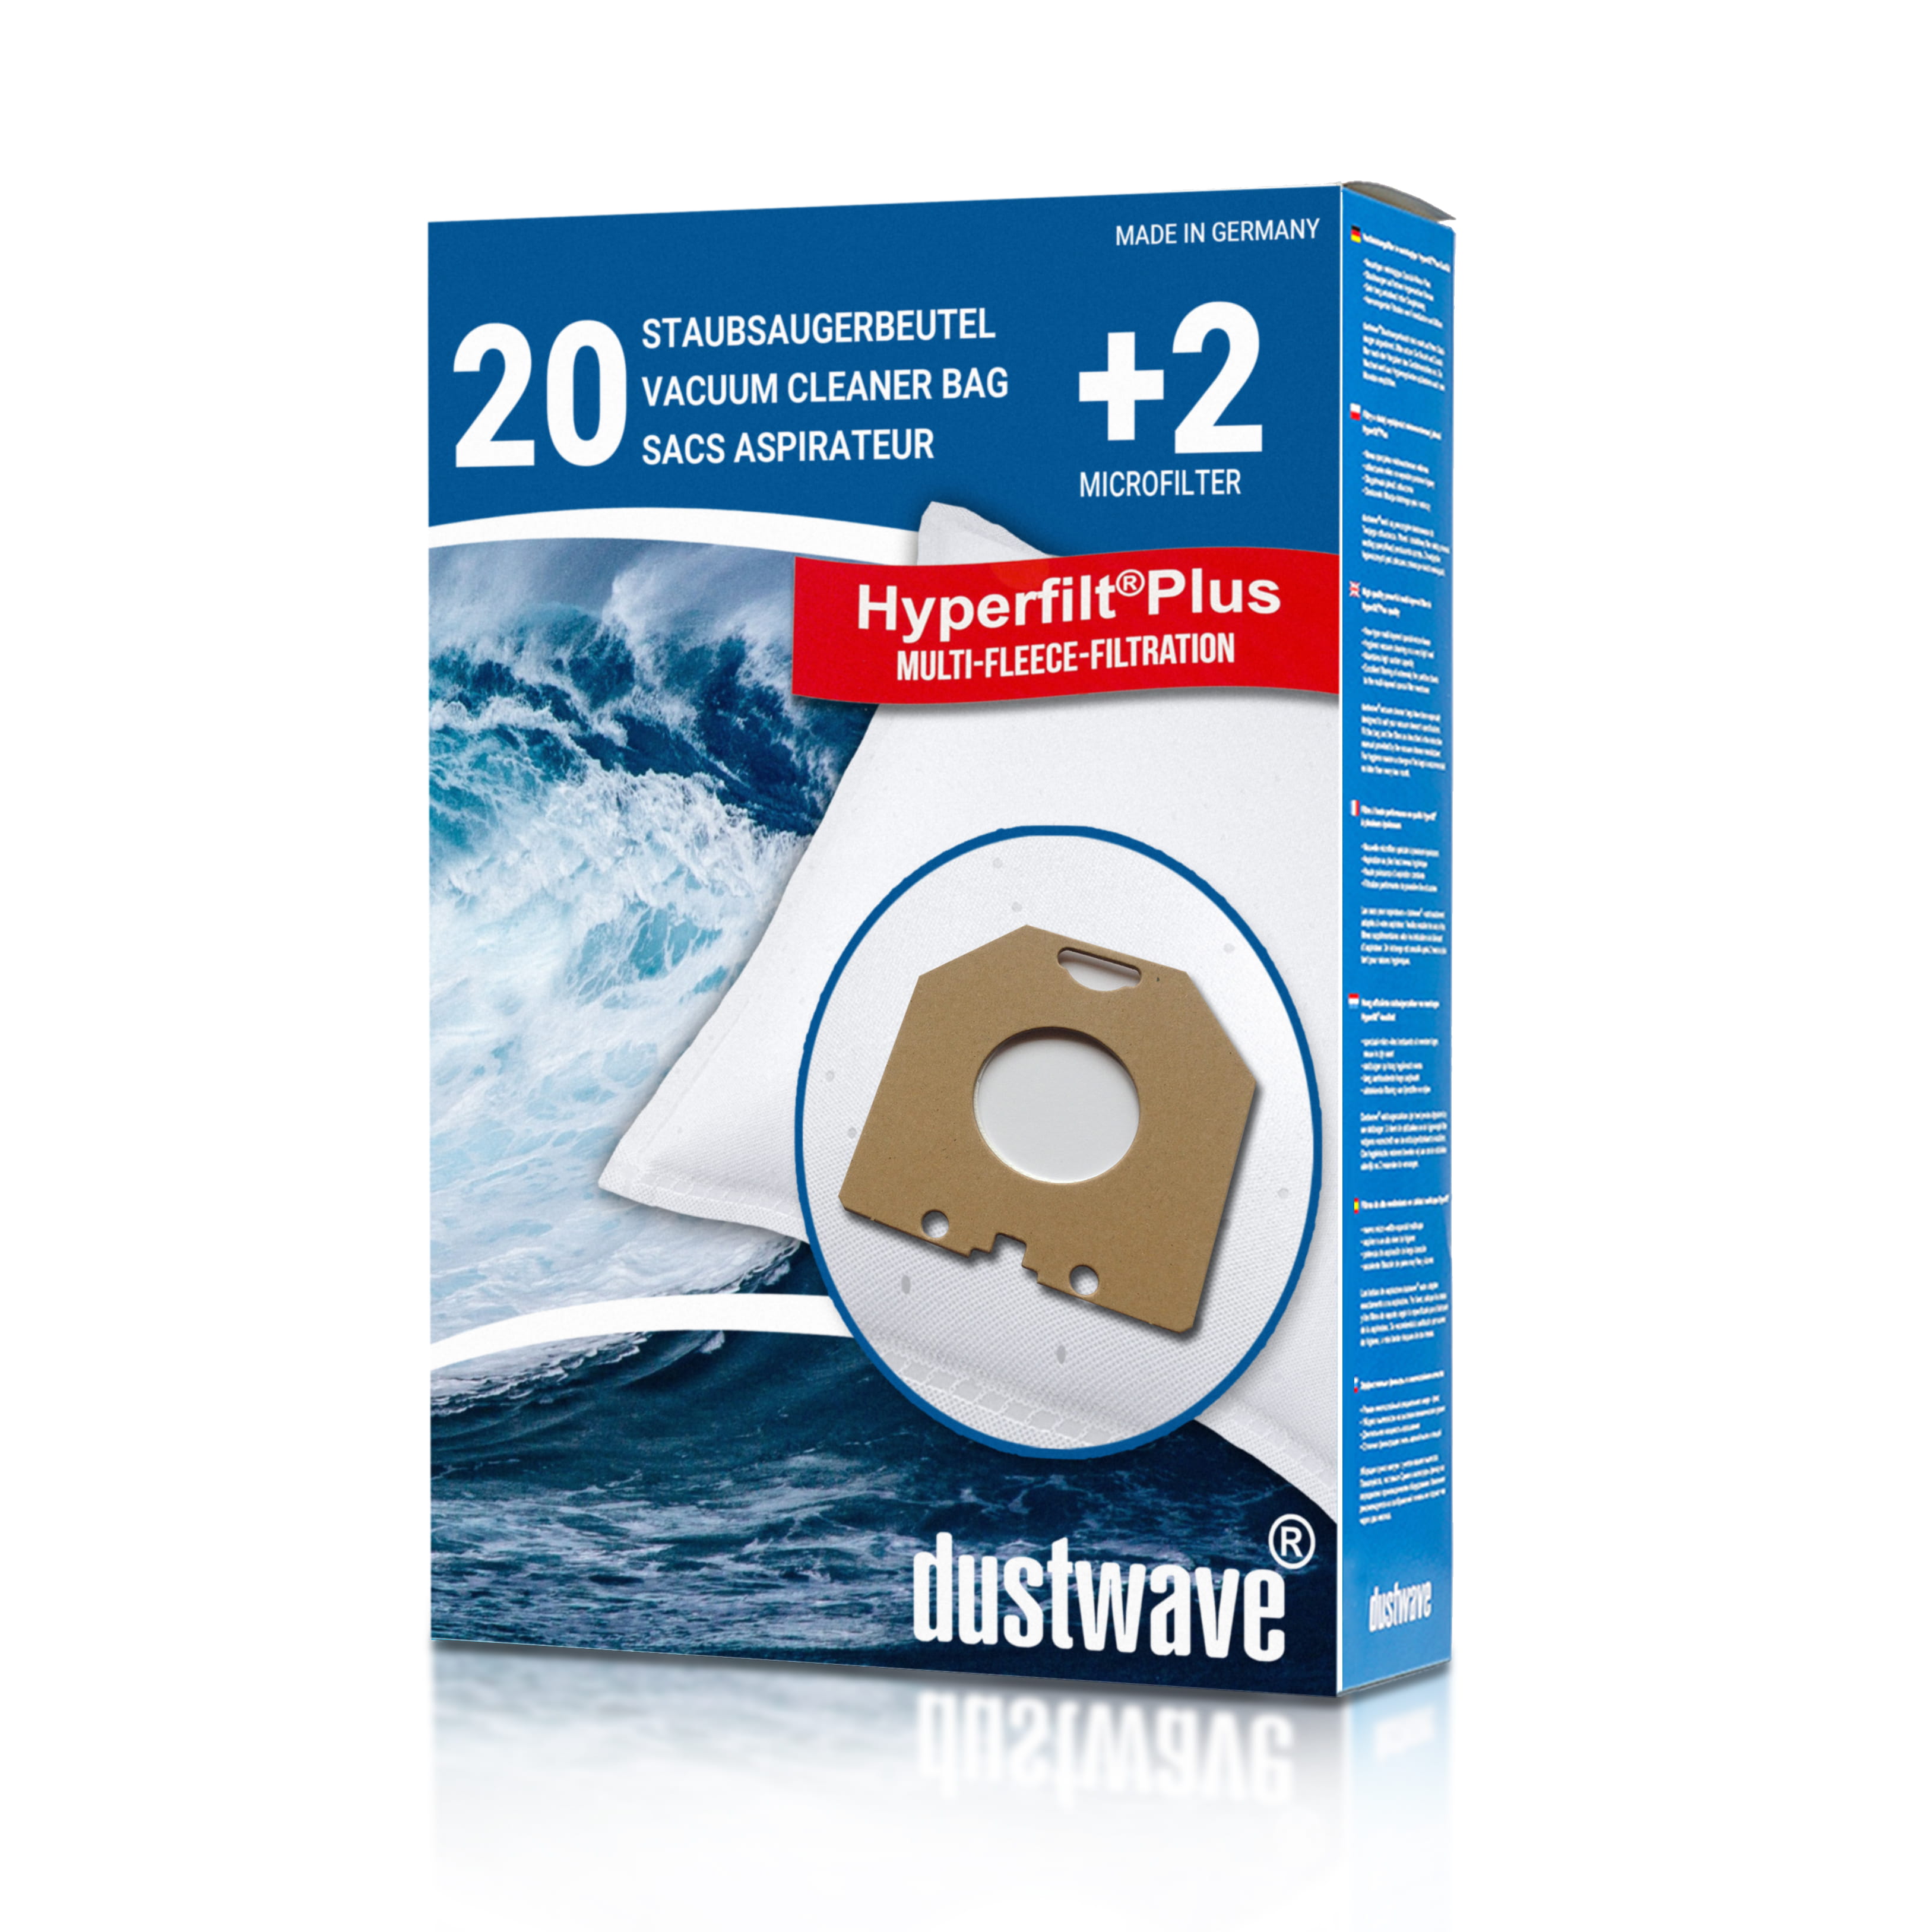 Dustwave® 20 Staubsaugerbeutel für SWIRL PH 84 - hocheffizient, mehrlagiges Mikrovlies mit Hygieneverschluss - Made in Germany